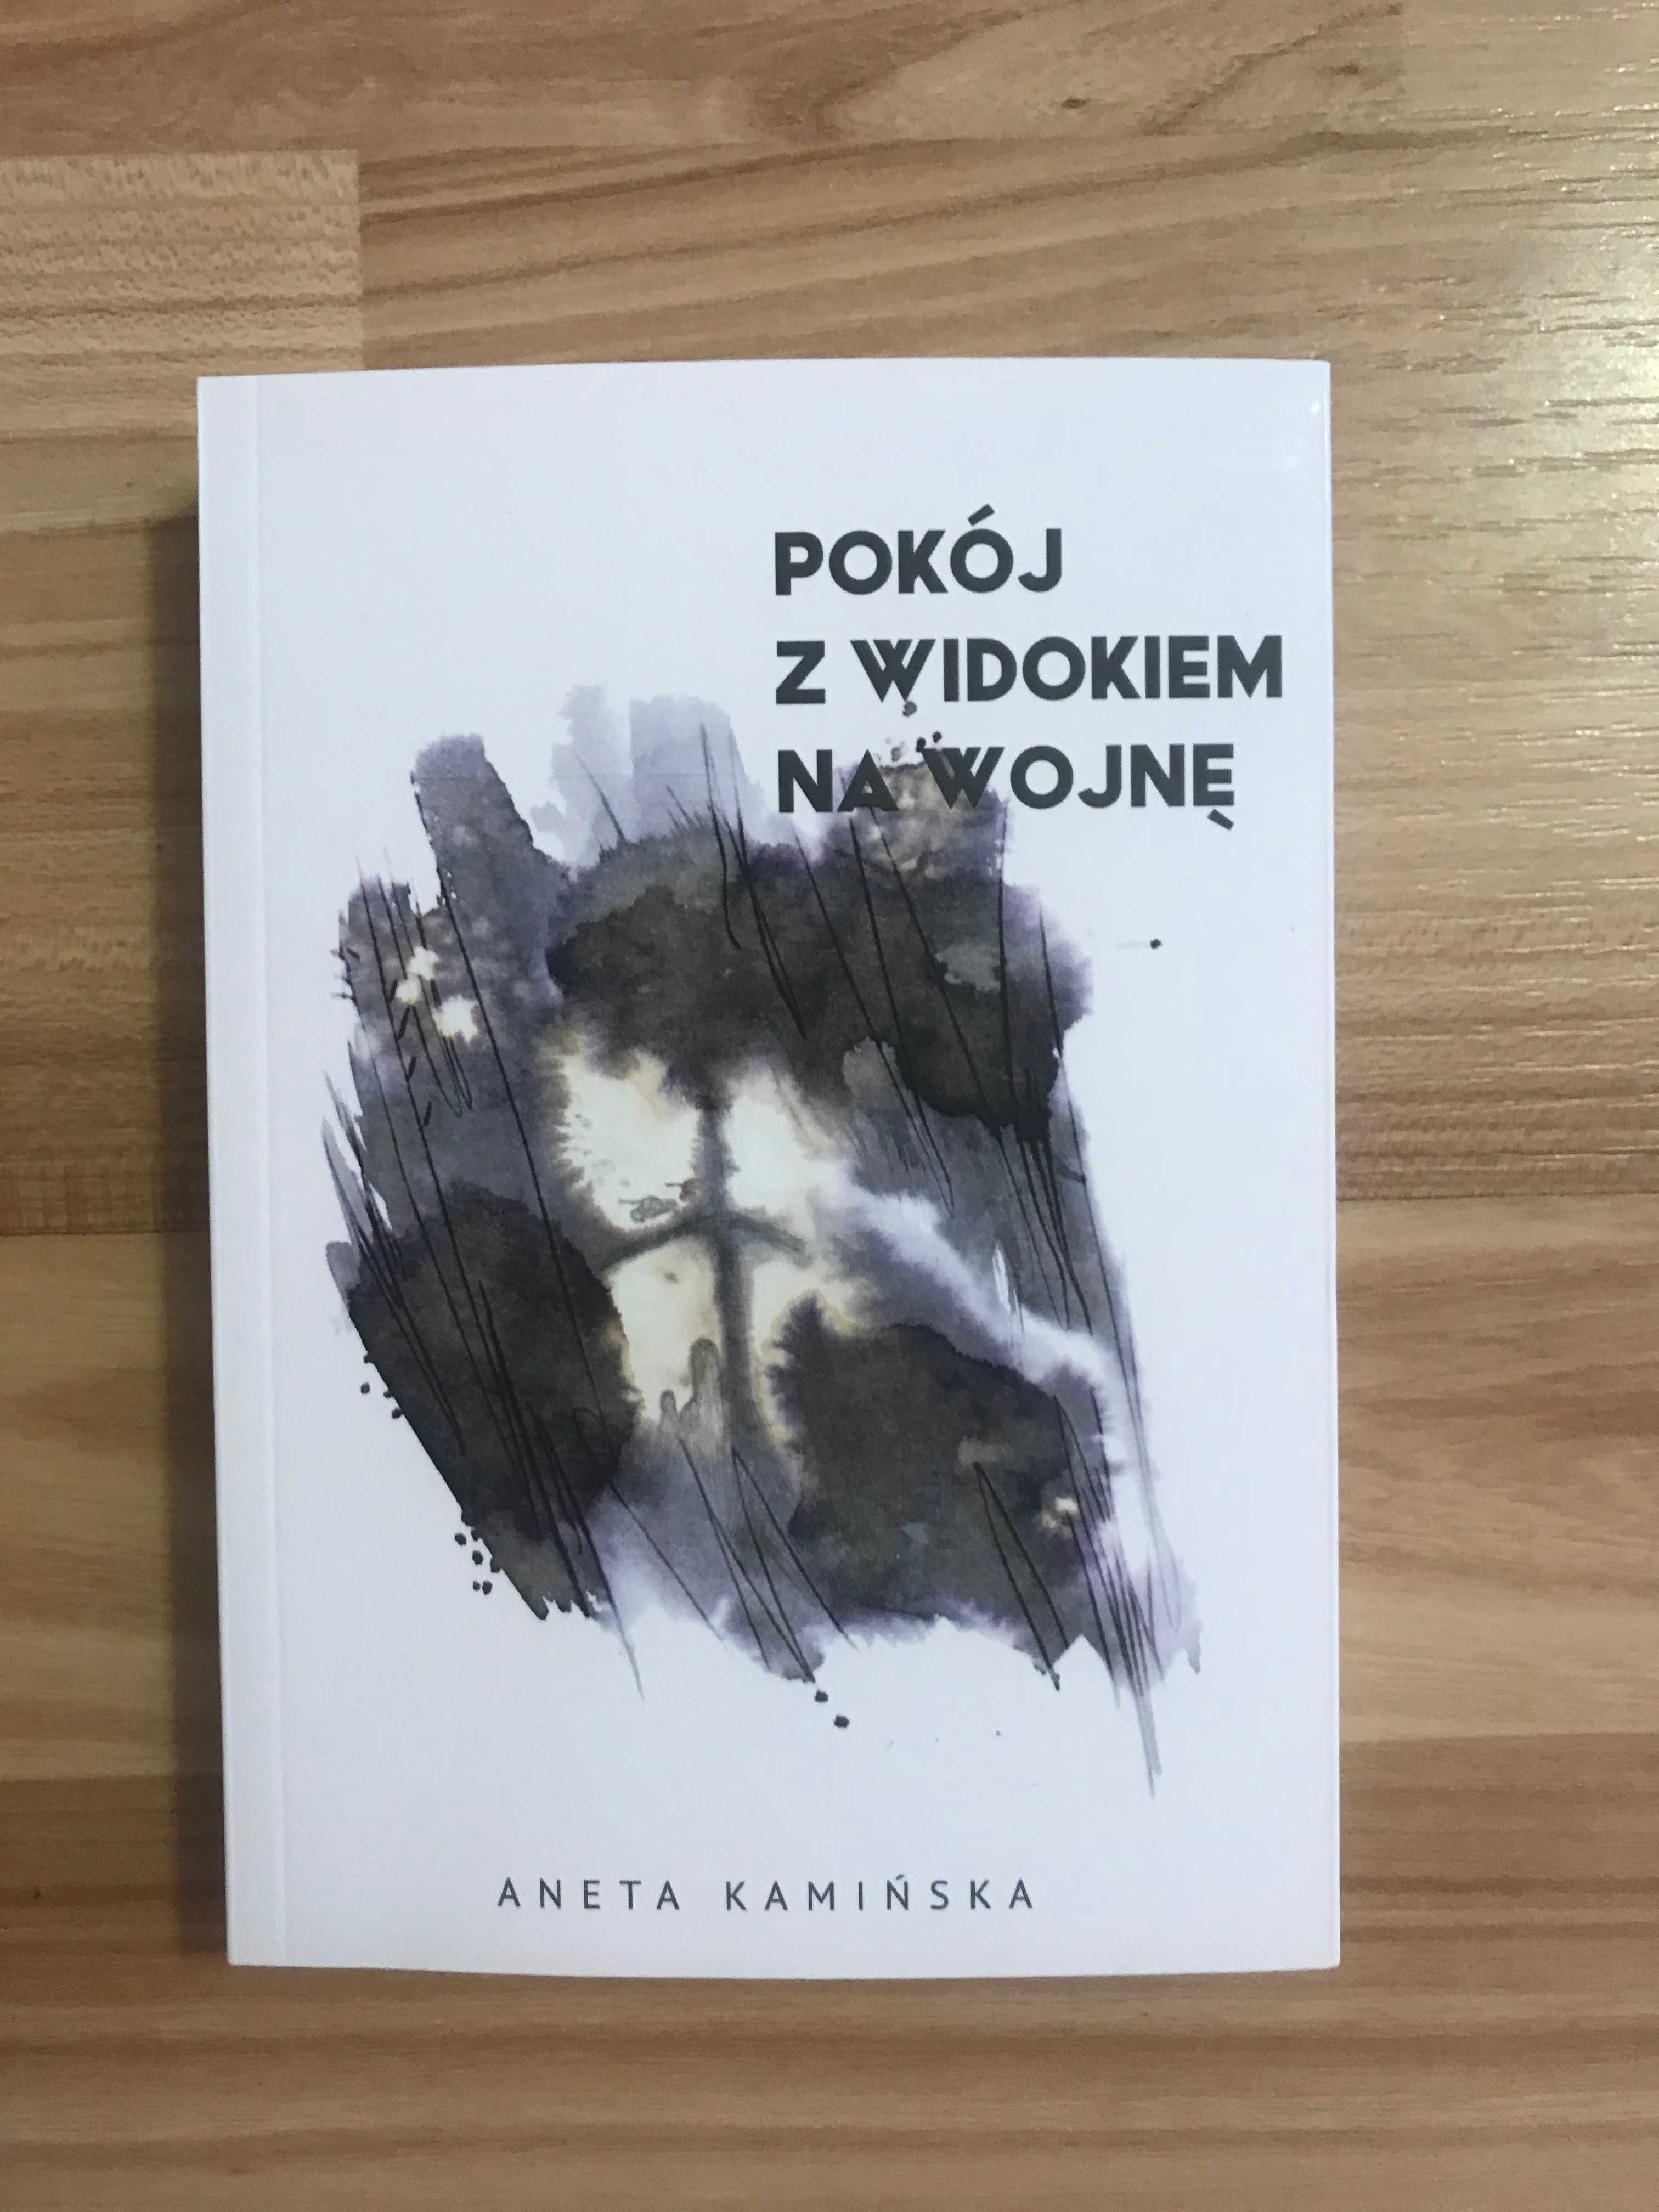 /Poezja/ Pokój z widokiem na wojnę - Aneta Kamińska - NOWA